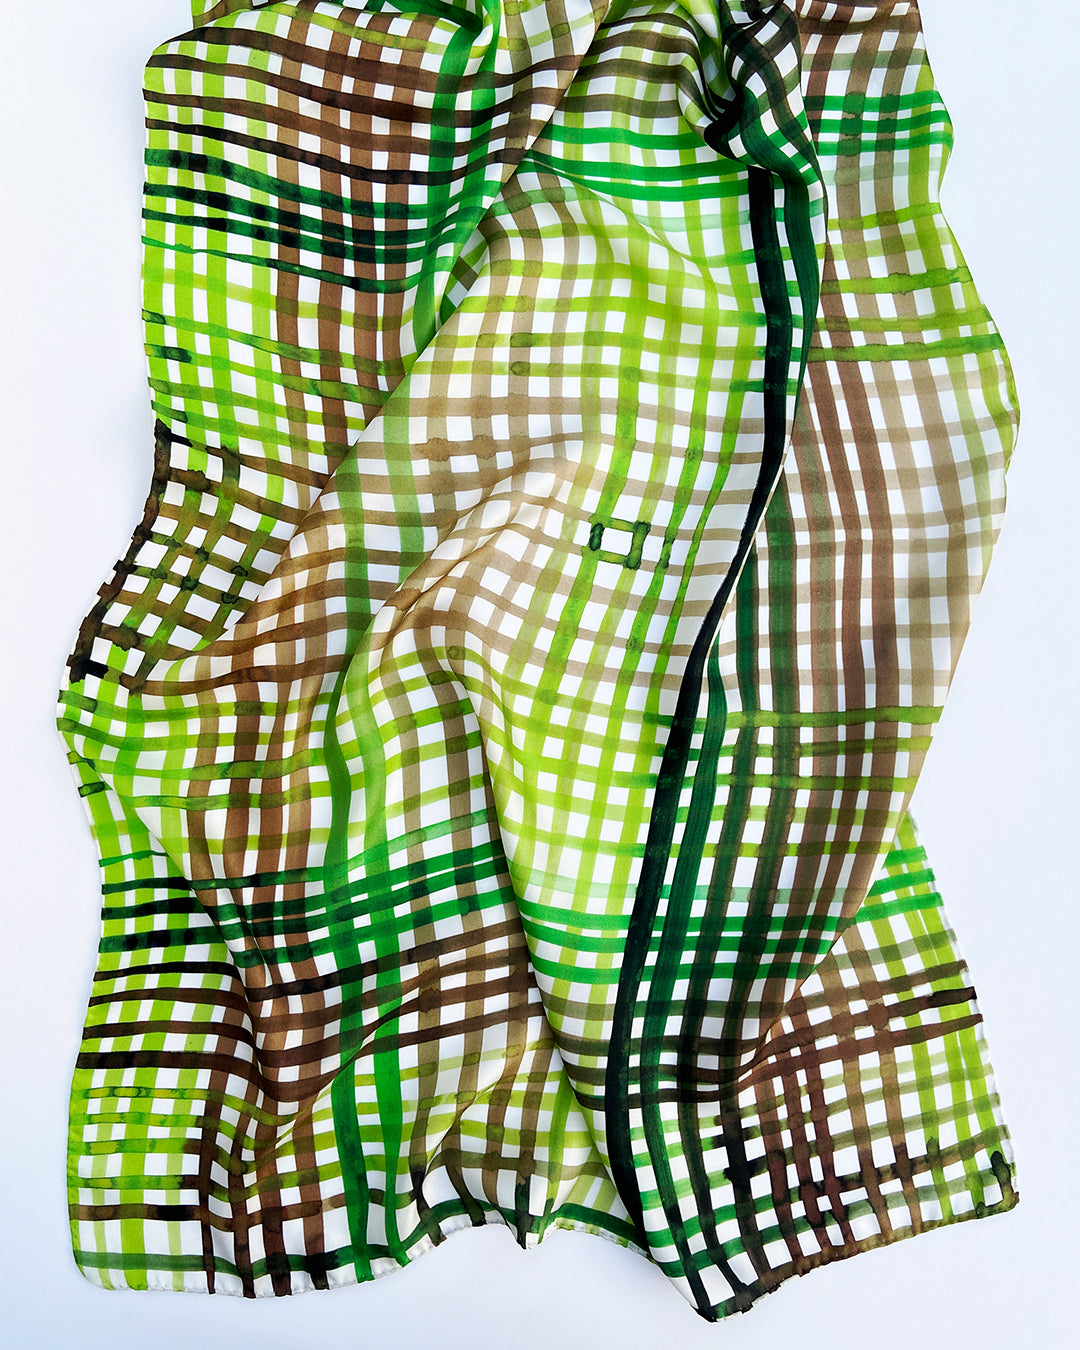 Aflangt silketørklæde i grønne farver, silketørklæde i brune farver, Silketørklæde lyst ternet, Silketørklæde med grønne og brune håndmalede tern, Silketørklæde aflangt 160 x 65 cm, Silketørklæde i 100 % ren silke, silketørklæde i ægte silke twill, silketørklæde med design af Susanne Schjerning, silketørklæde med rullede kanter. Giv et silketørklæde i gave. Bæredygtigt silketørklæde i bæredygtig dansk design, silketørklædet der er nemt at binde. 